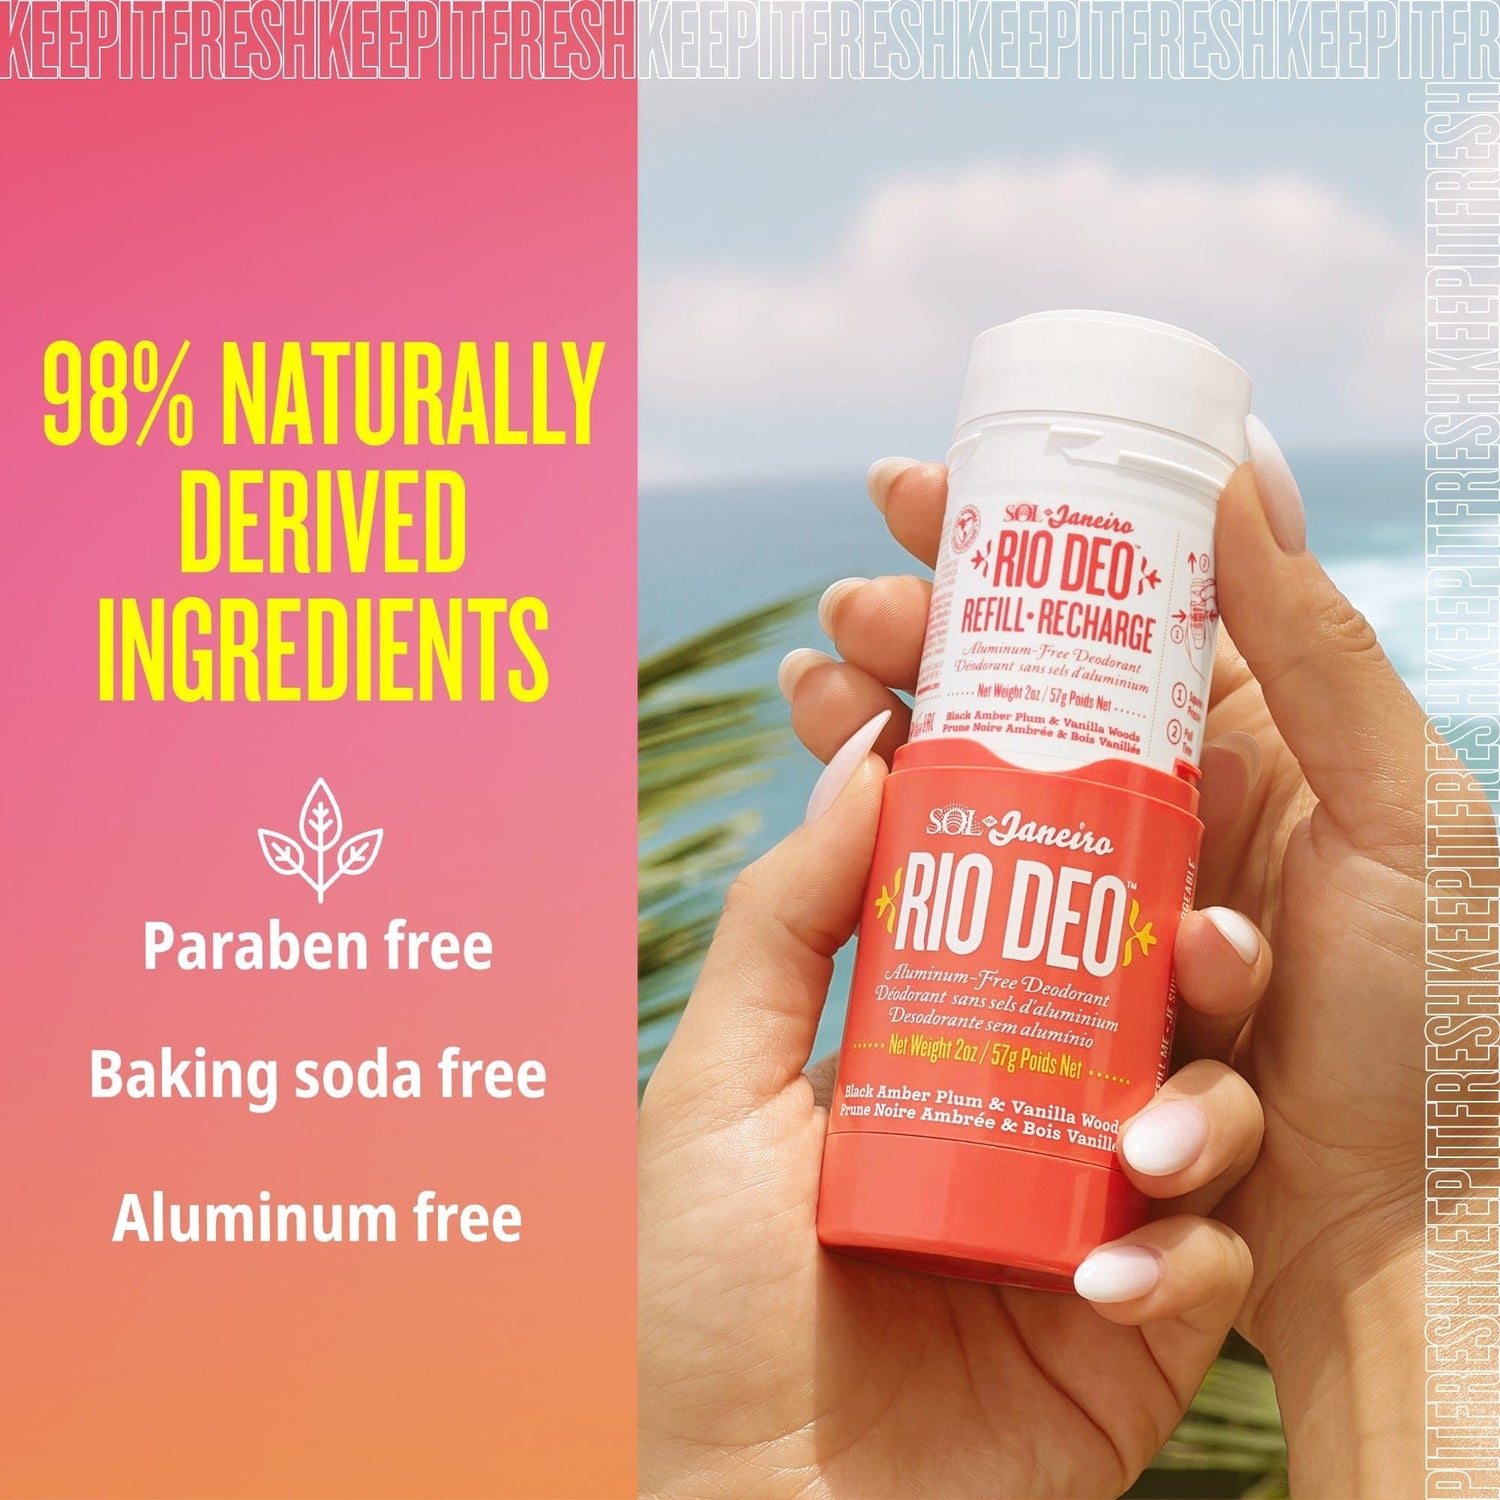 98% naturally derived ingredients - paraben free, baking soda free, aluminum free